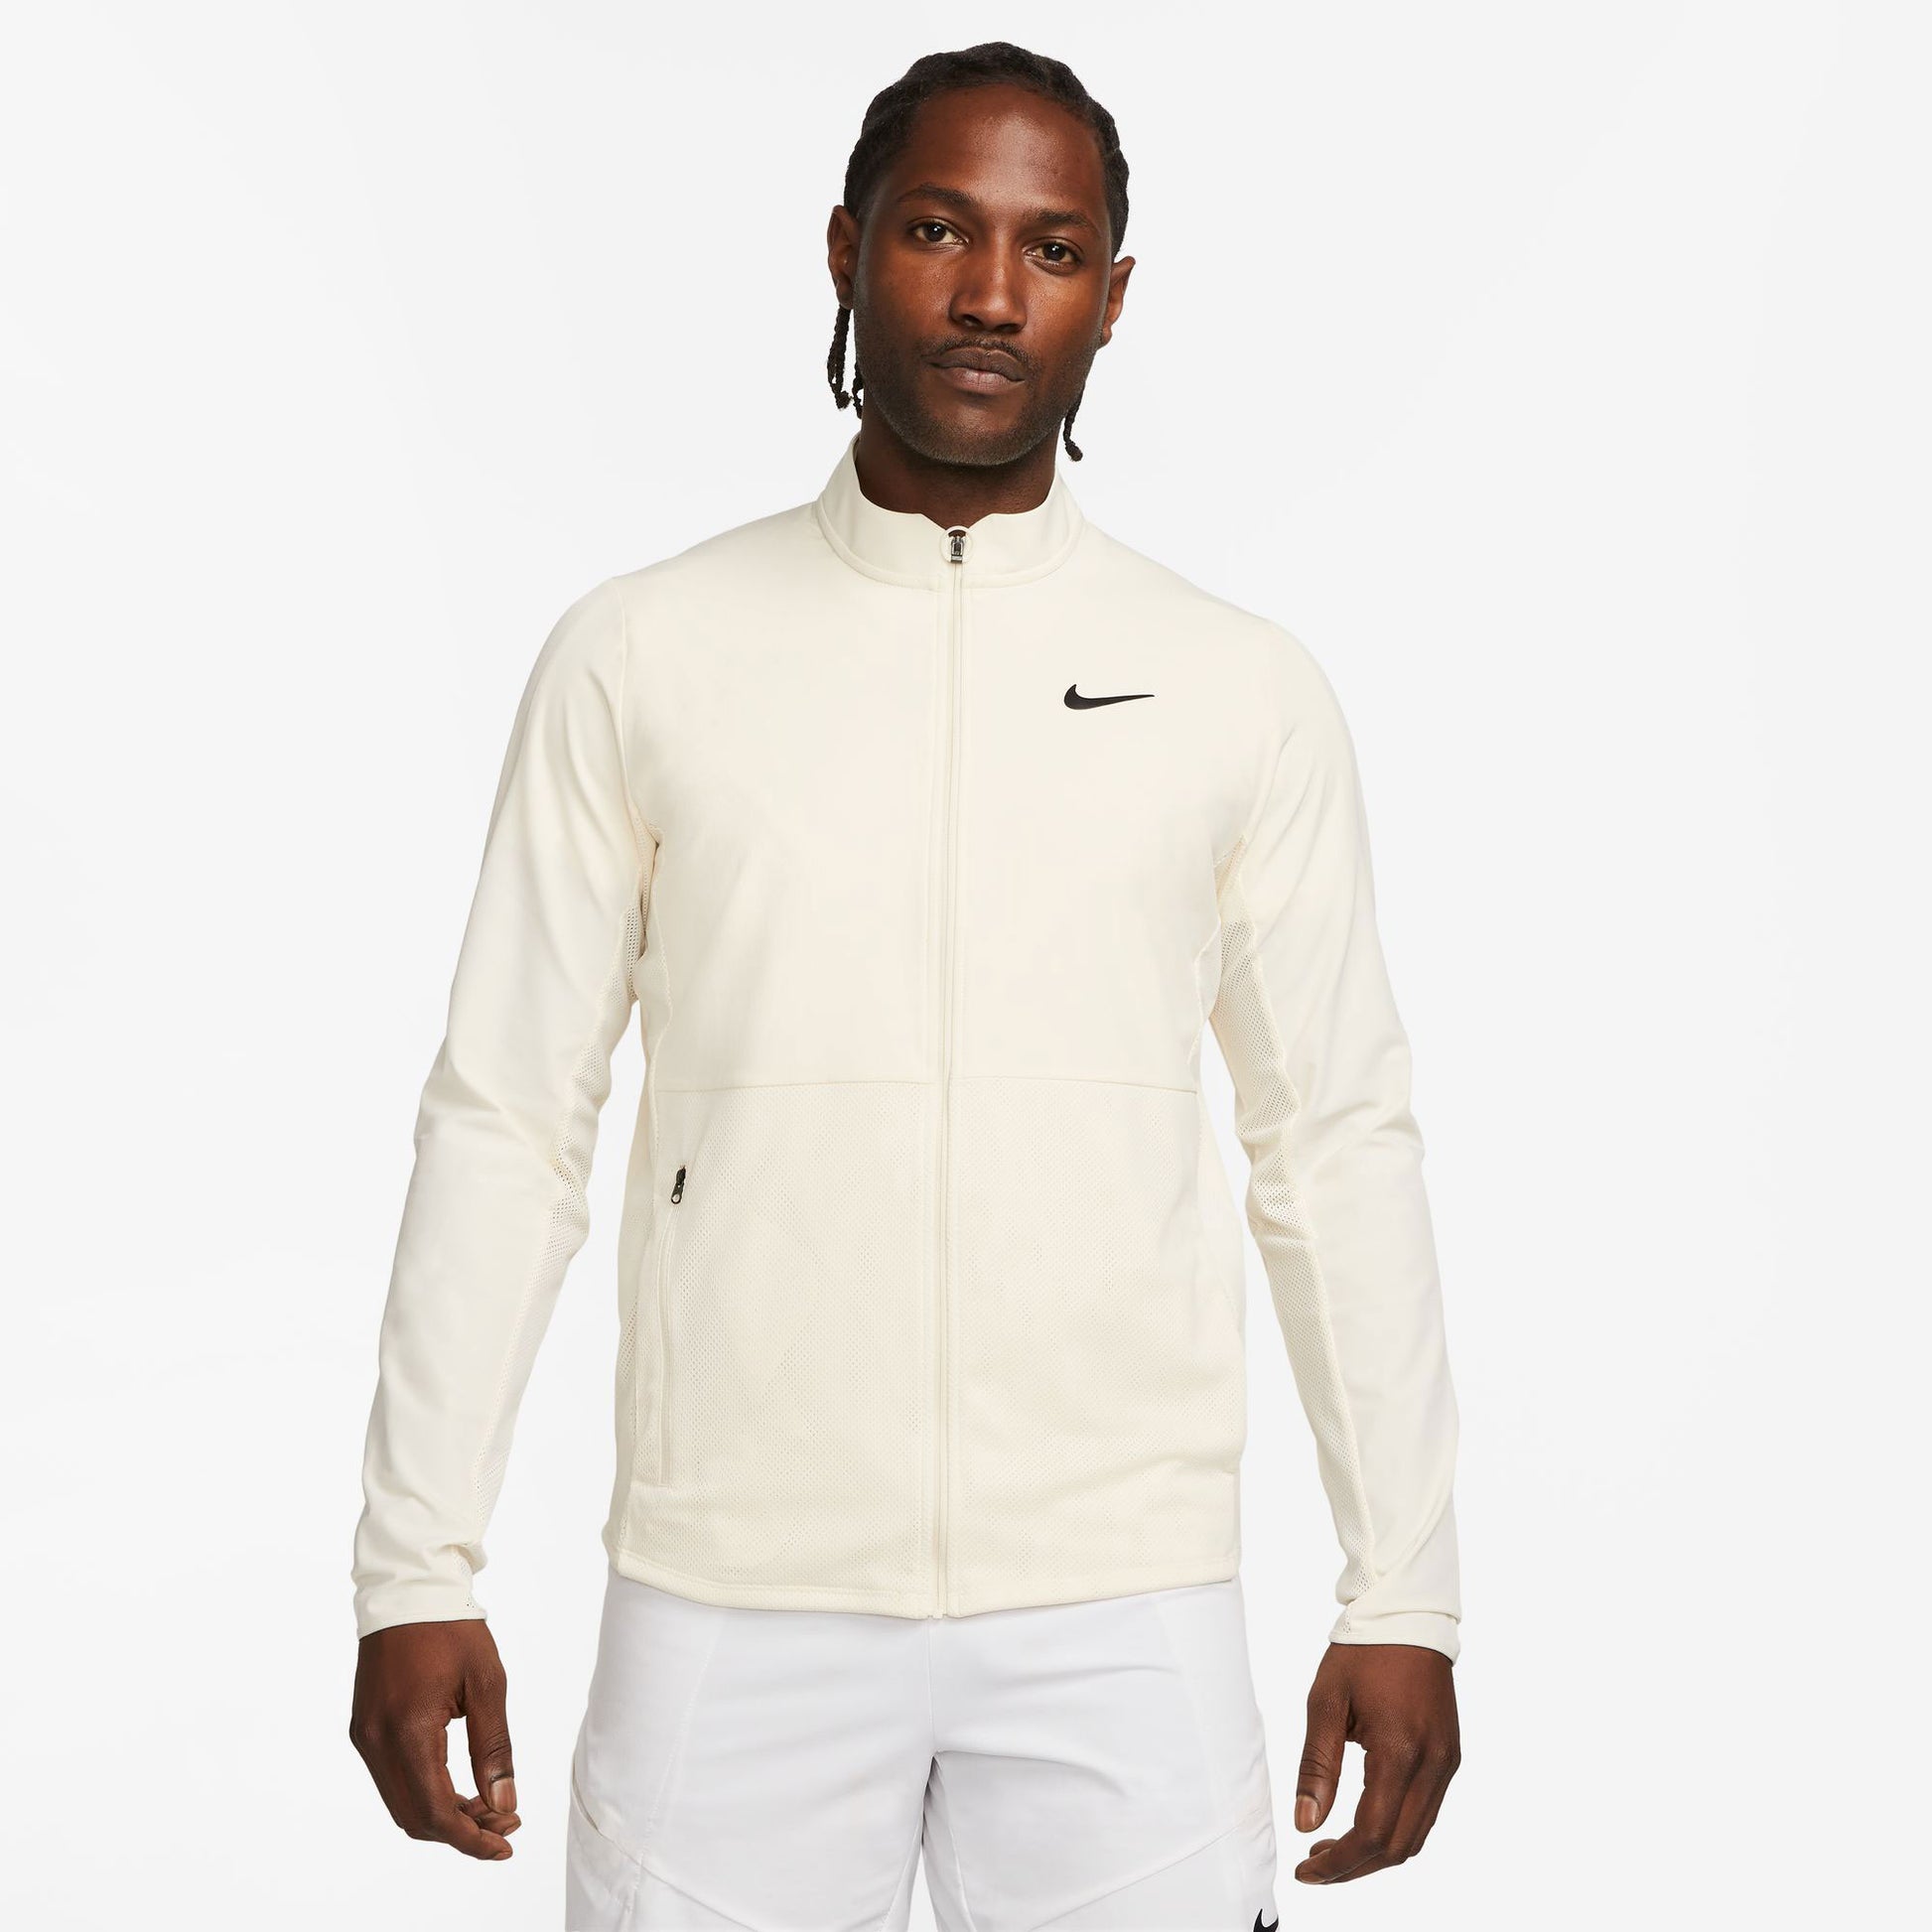 NikeCourt Advantage Men's Packable Tennis Jacket White (1)